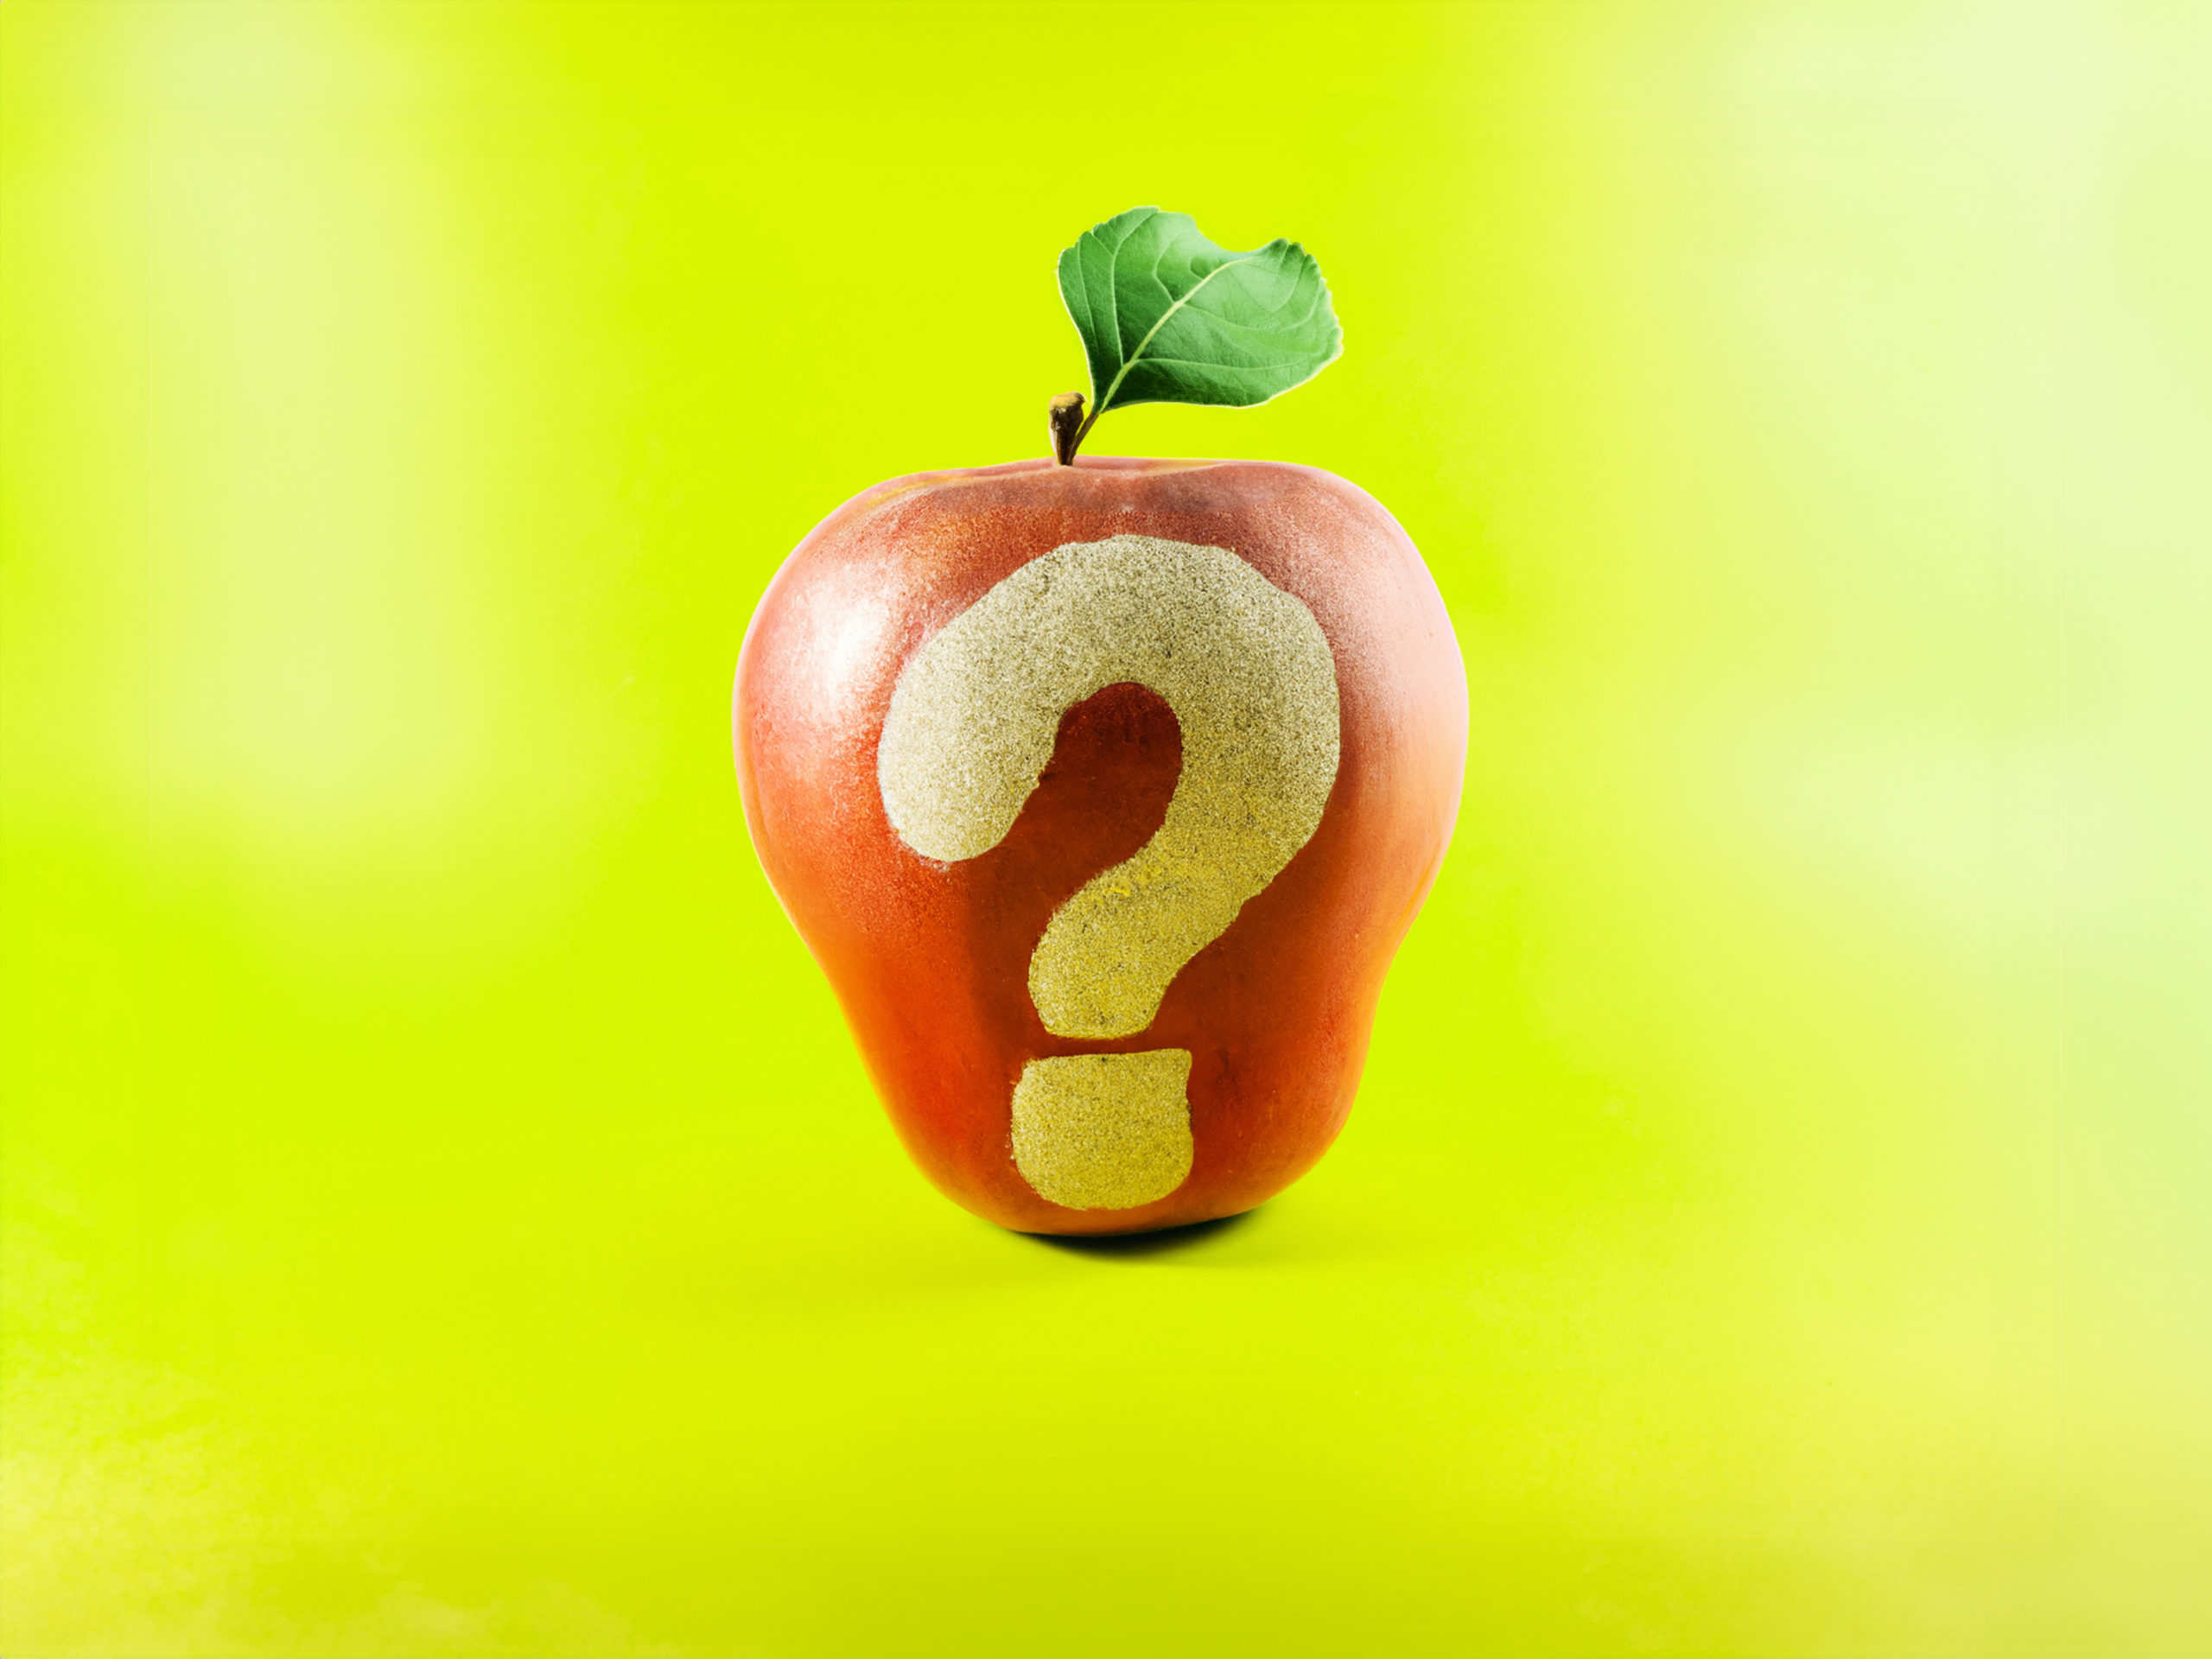 Pomme rouge avec un point d'interrogation sans peau, sur fond vert pomme.